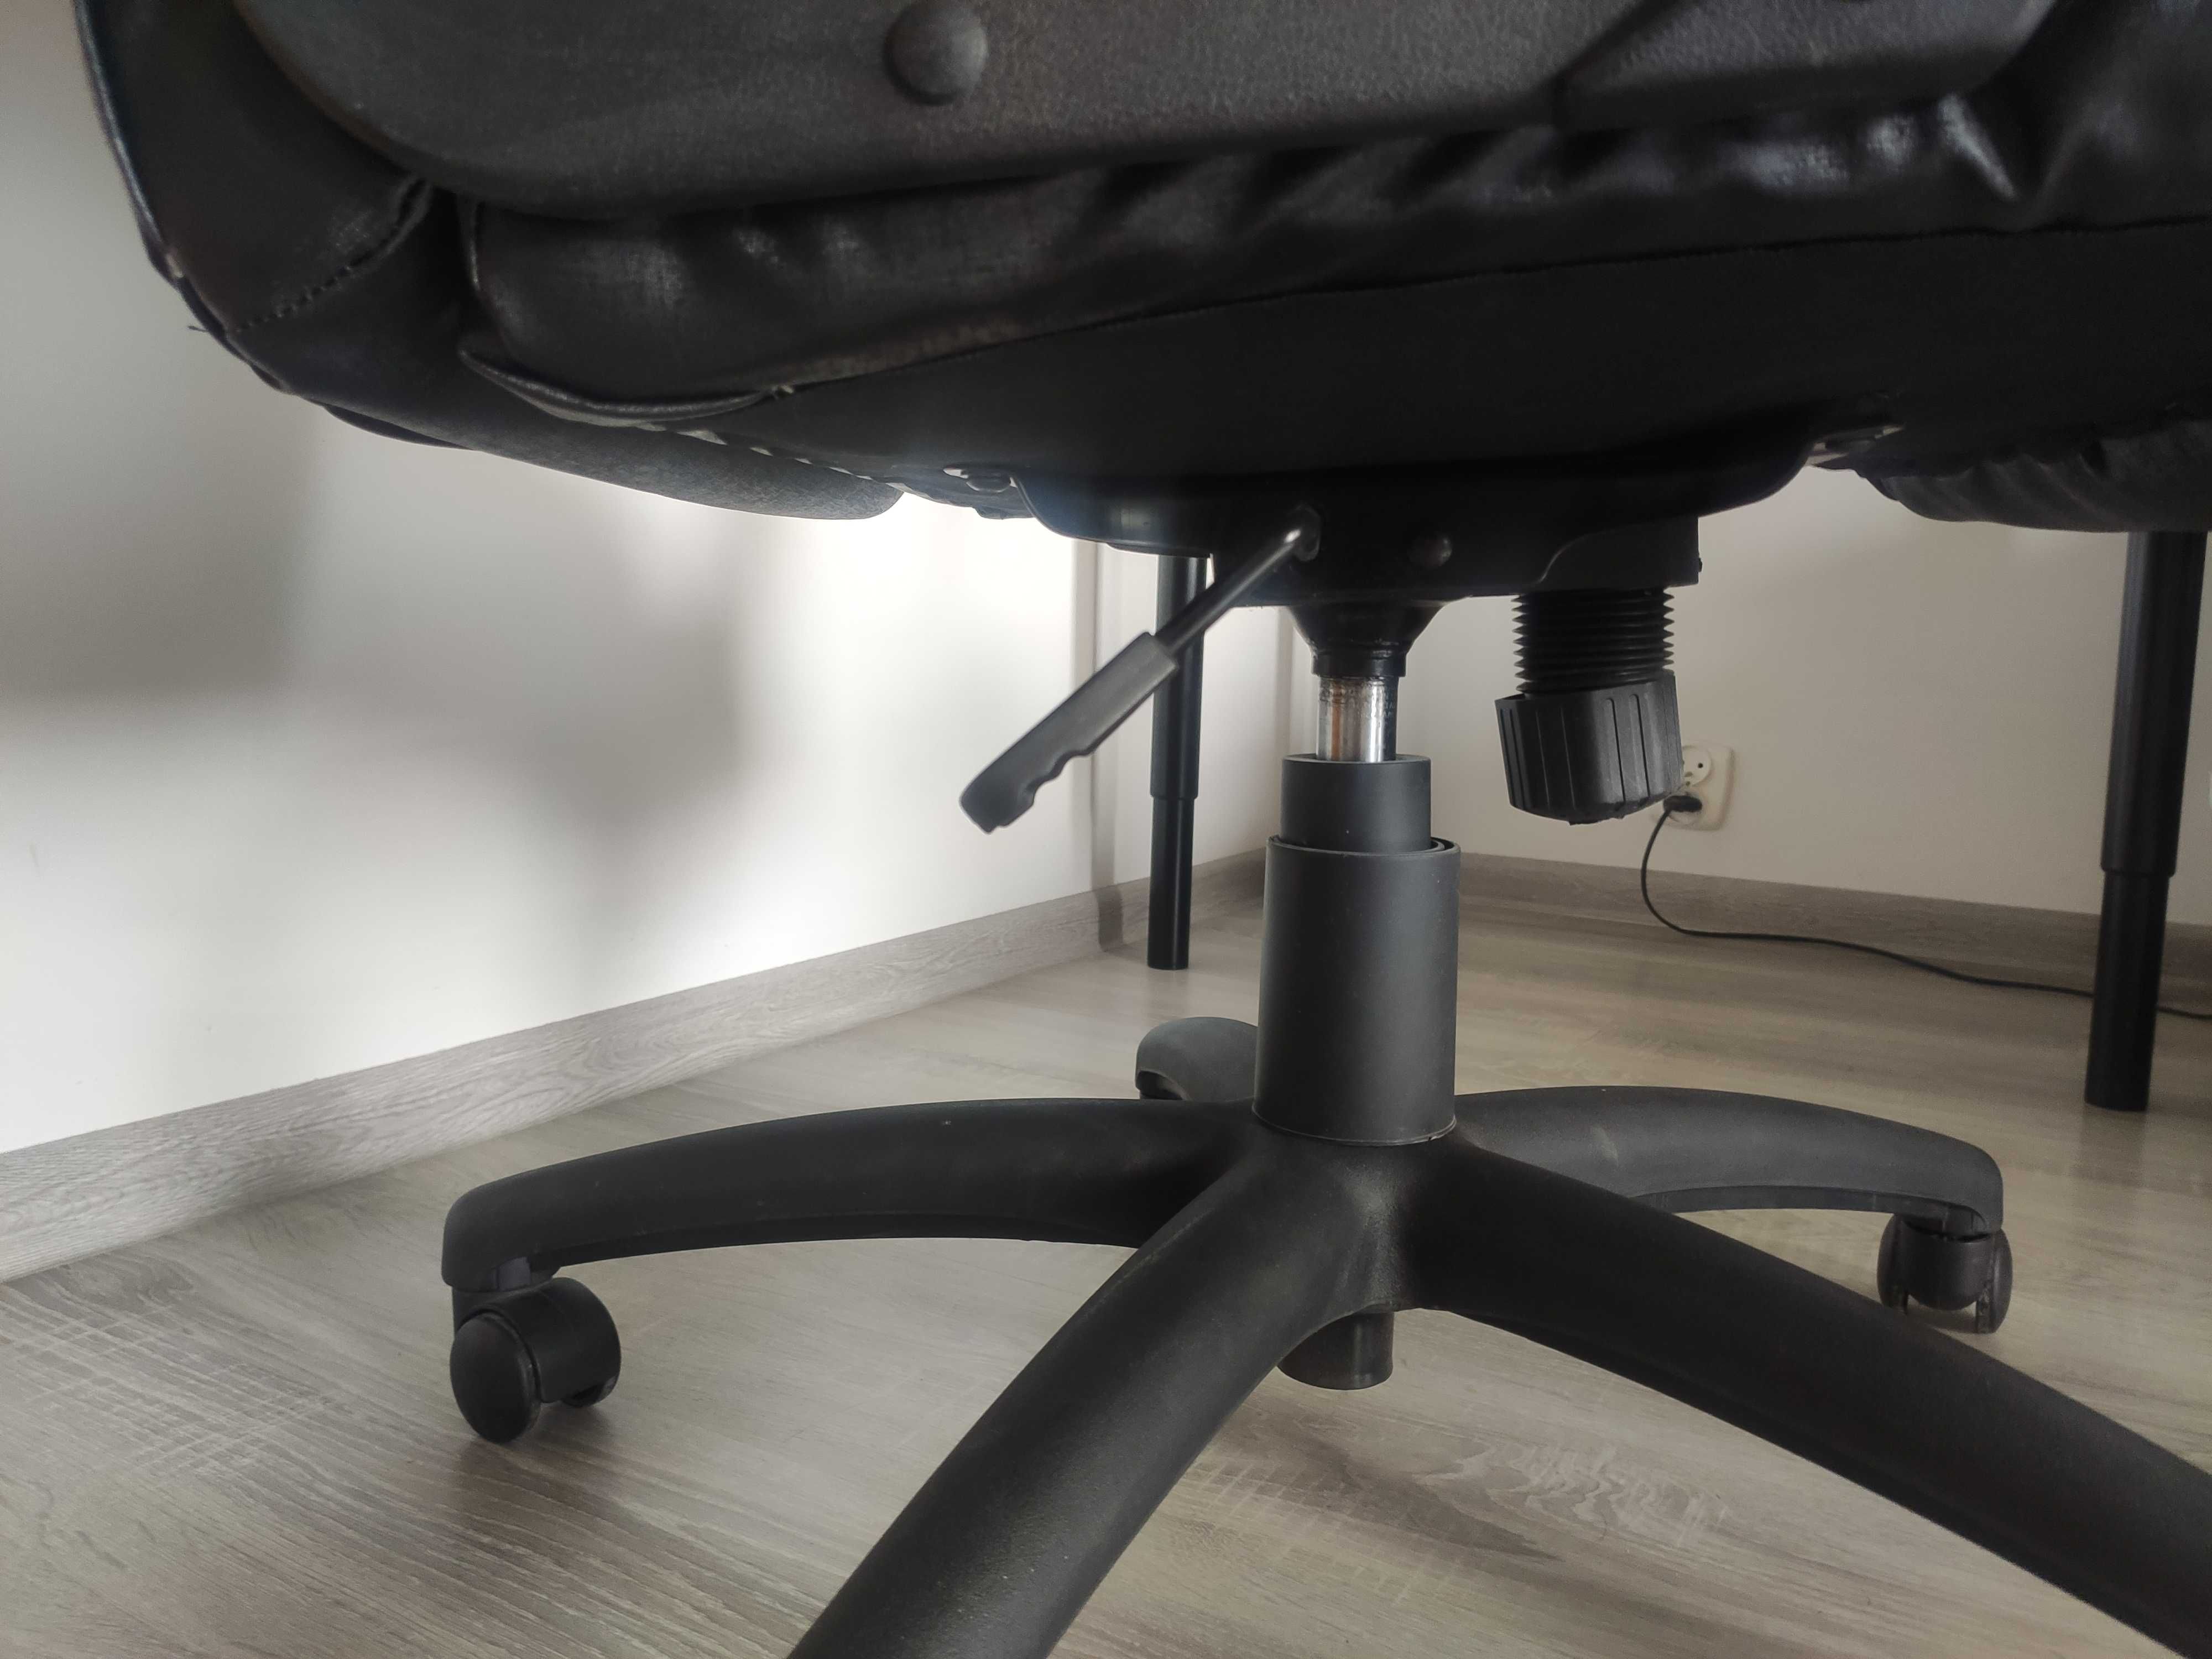 Krzesło obrotowe do biurka skóra krzesło biurowe